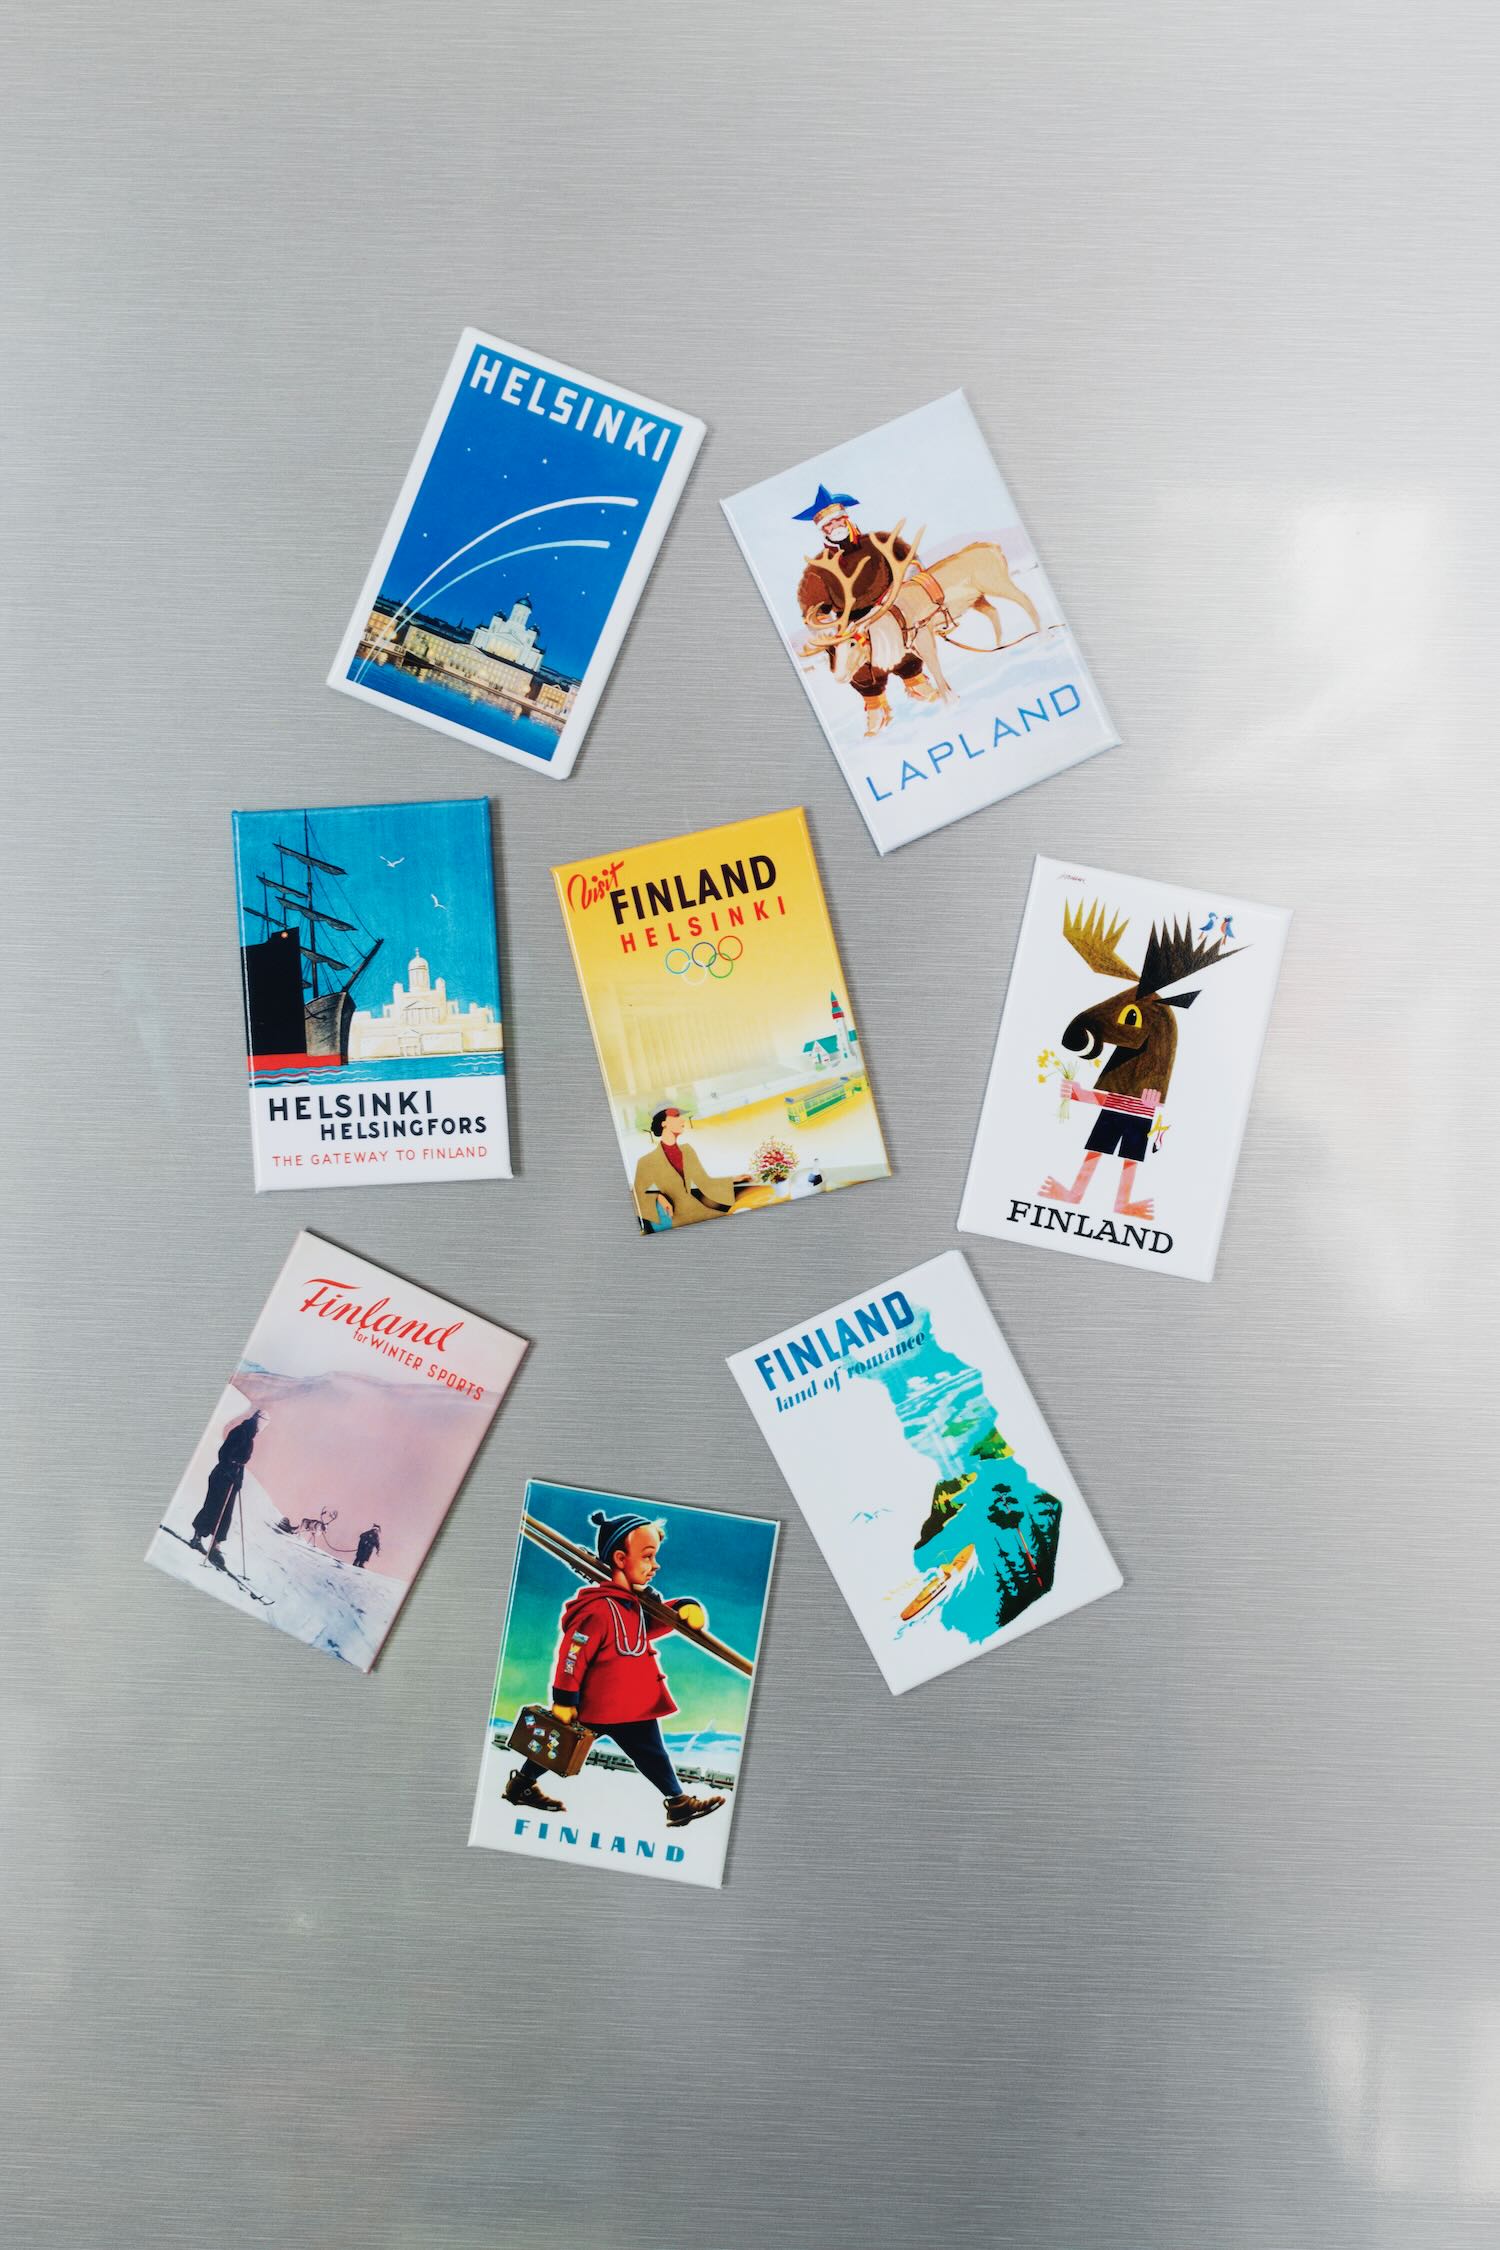 Sisustuskuva suomalaisesta matkajulisteesta painettu postikorttina, nimeltään “Suksipoika” painettuna jääkaappimagneetille.